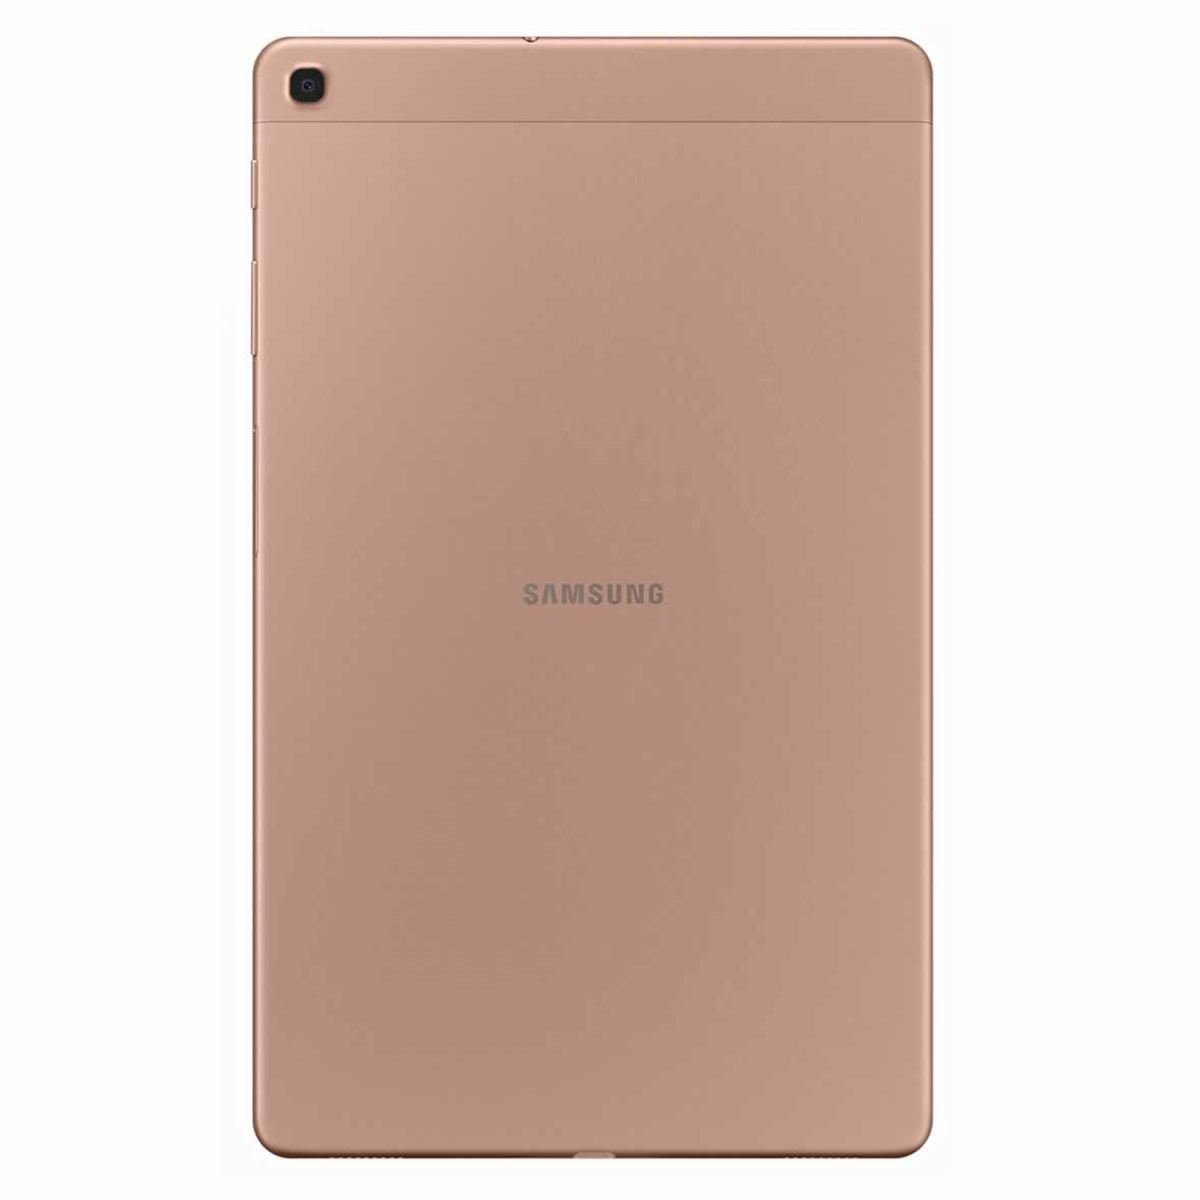 Samsung Galaxy Tab A 10.1 Dorada